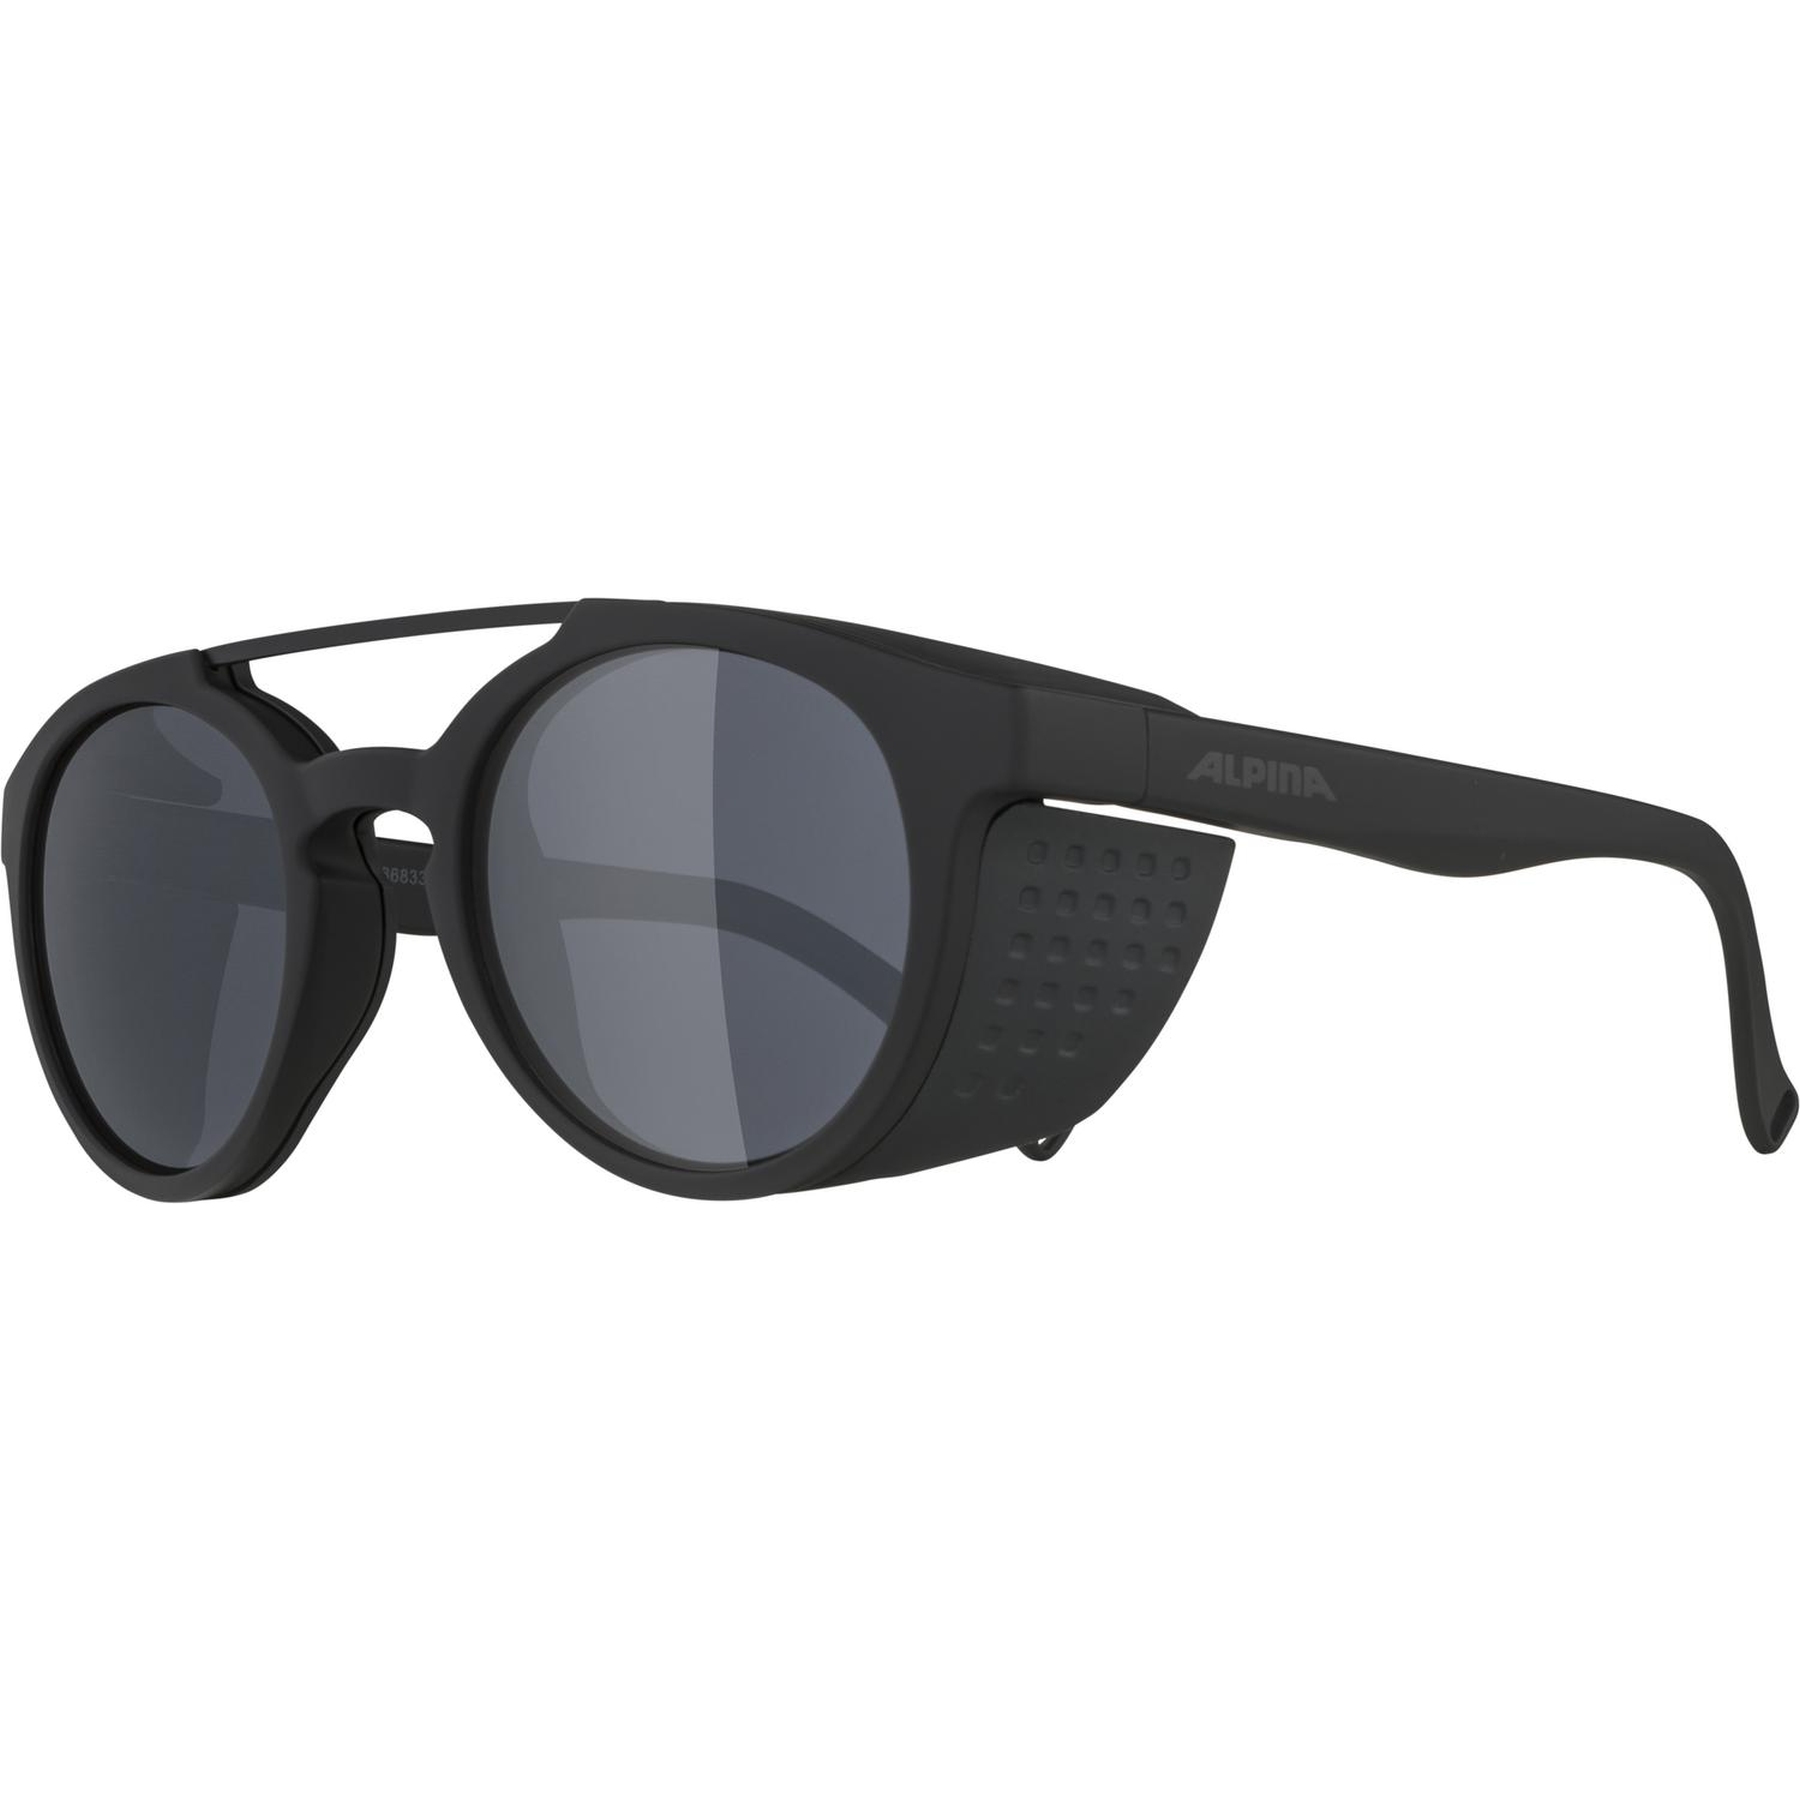 Productfoto van Alpina Glace Glasses - all black matt/Black Mirror